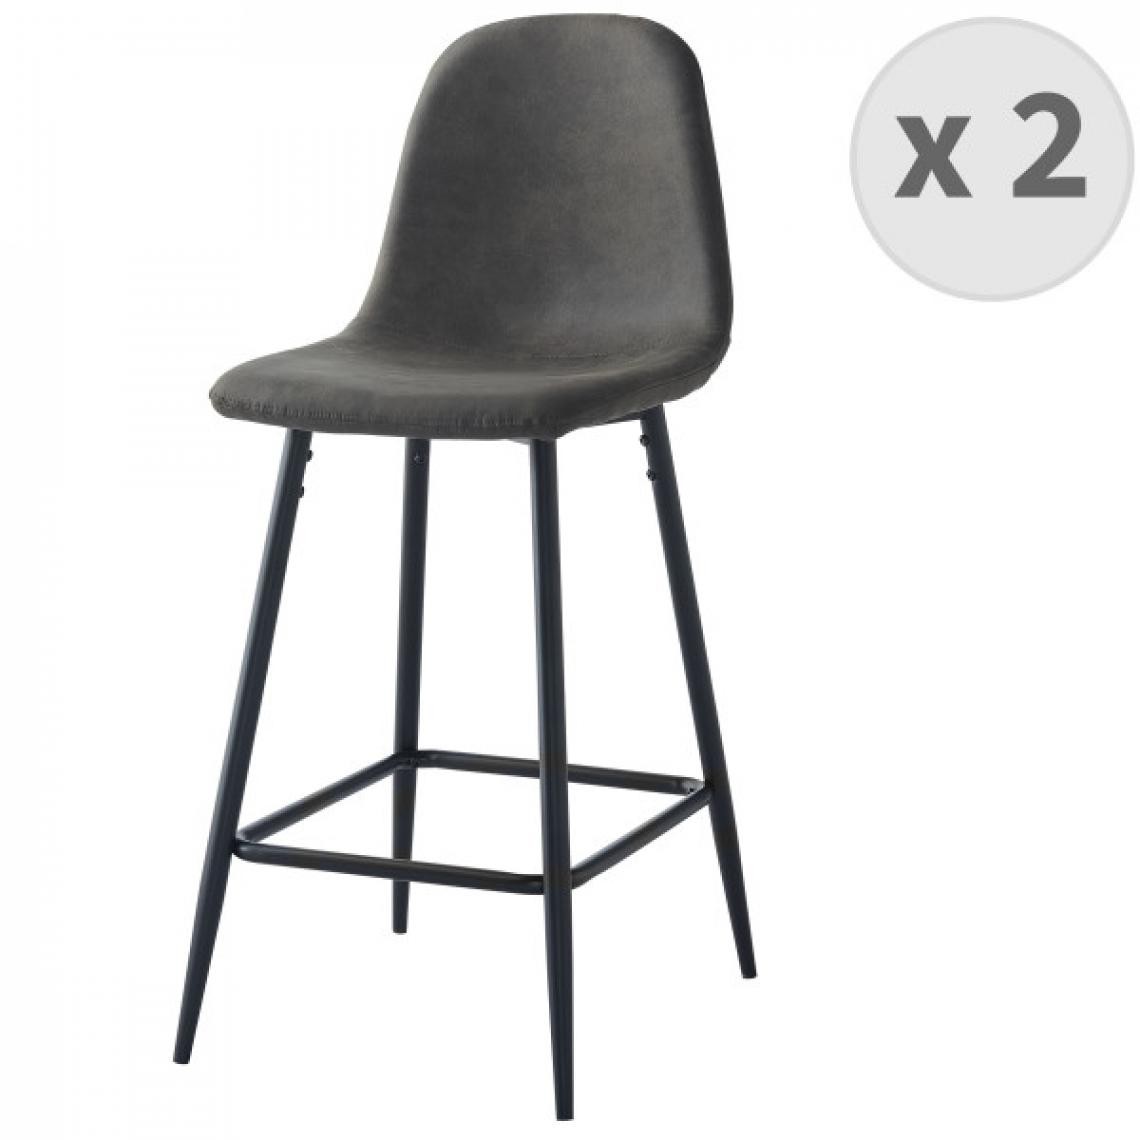 Moloo - MANCHESTER - Chaise de bar vintage microfibre marron foncé pieds métal noir (x2) - Tabourets